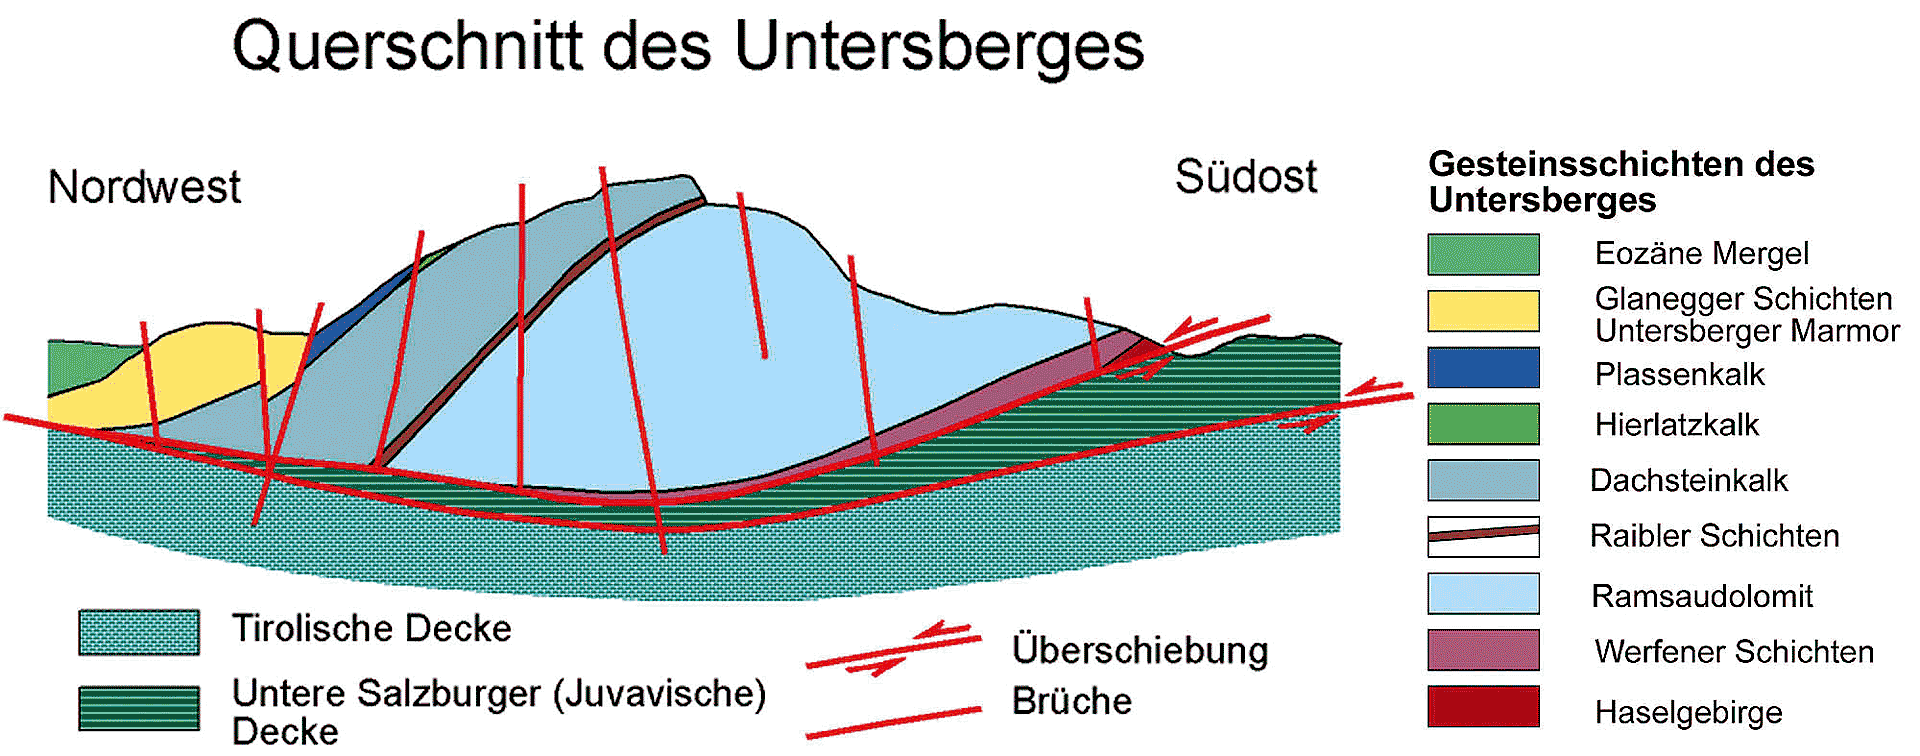 Der Querschnitt des Untersberges